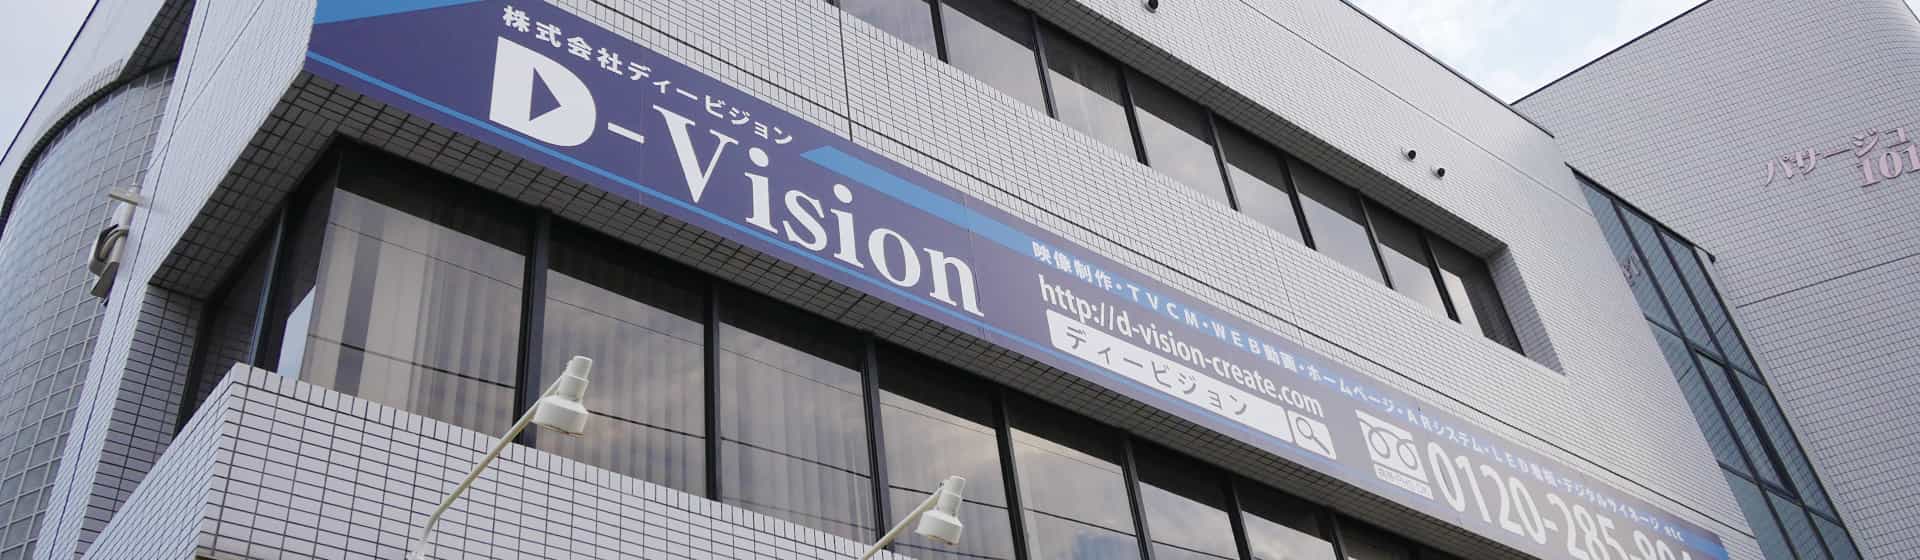 D-VISION社屋